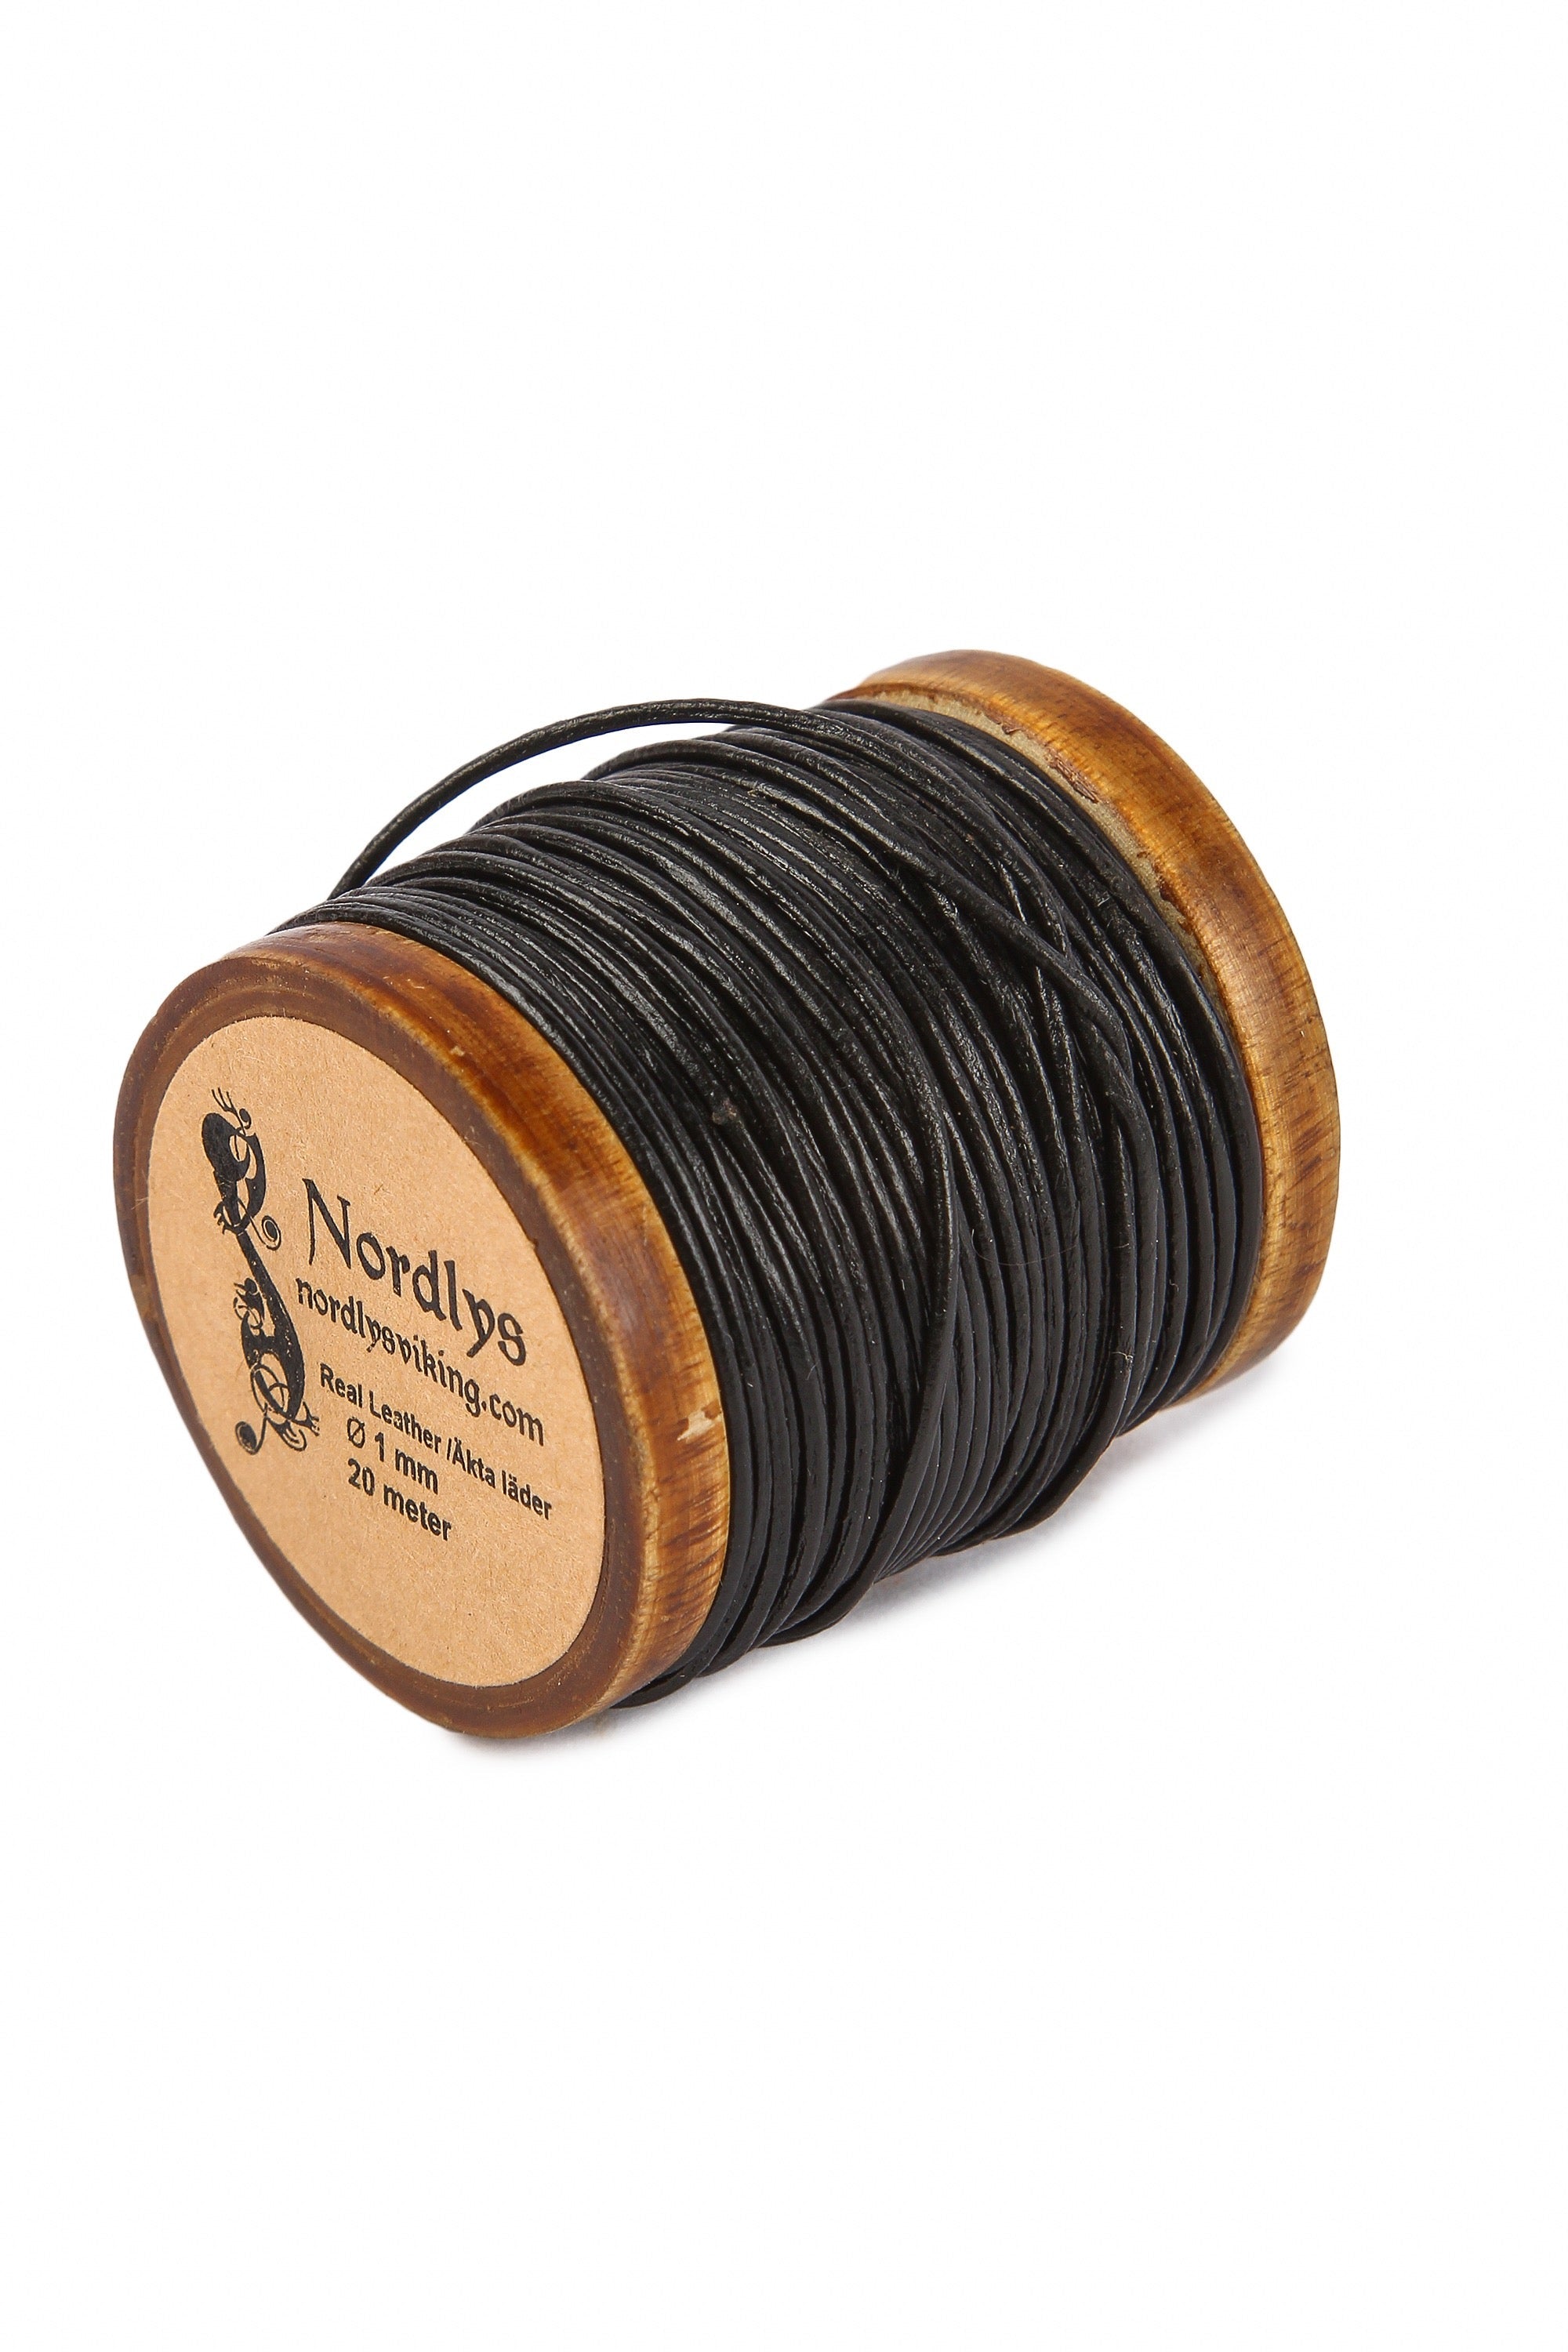  1 millimeter i svart färg. Upprullad på en traditionell träspole. Hög kvalitet och skarvfri. Tillverkad av vegetabiliskt garvat läder. En snygg och praktisk tråd.
